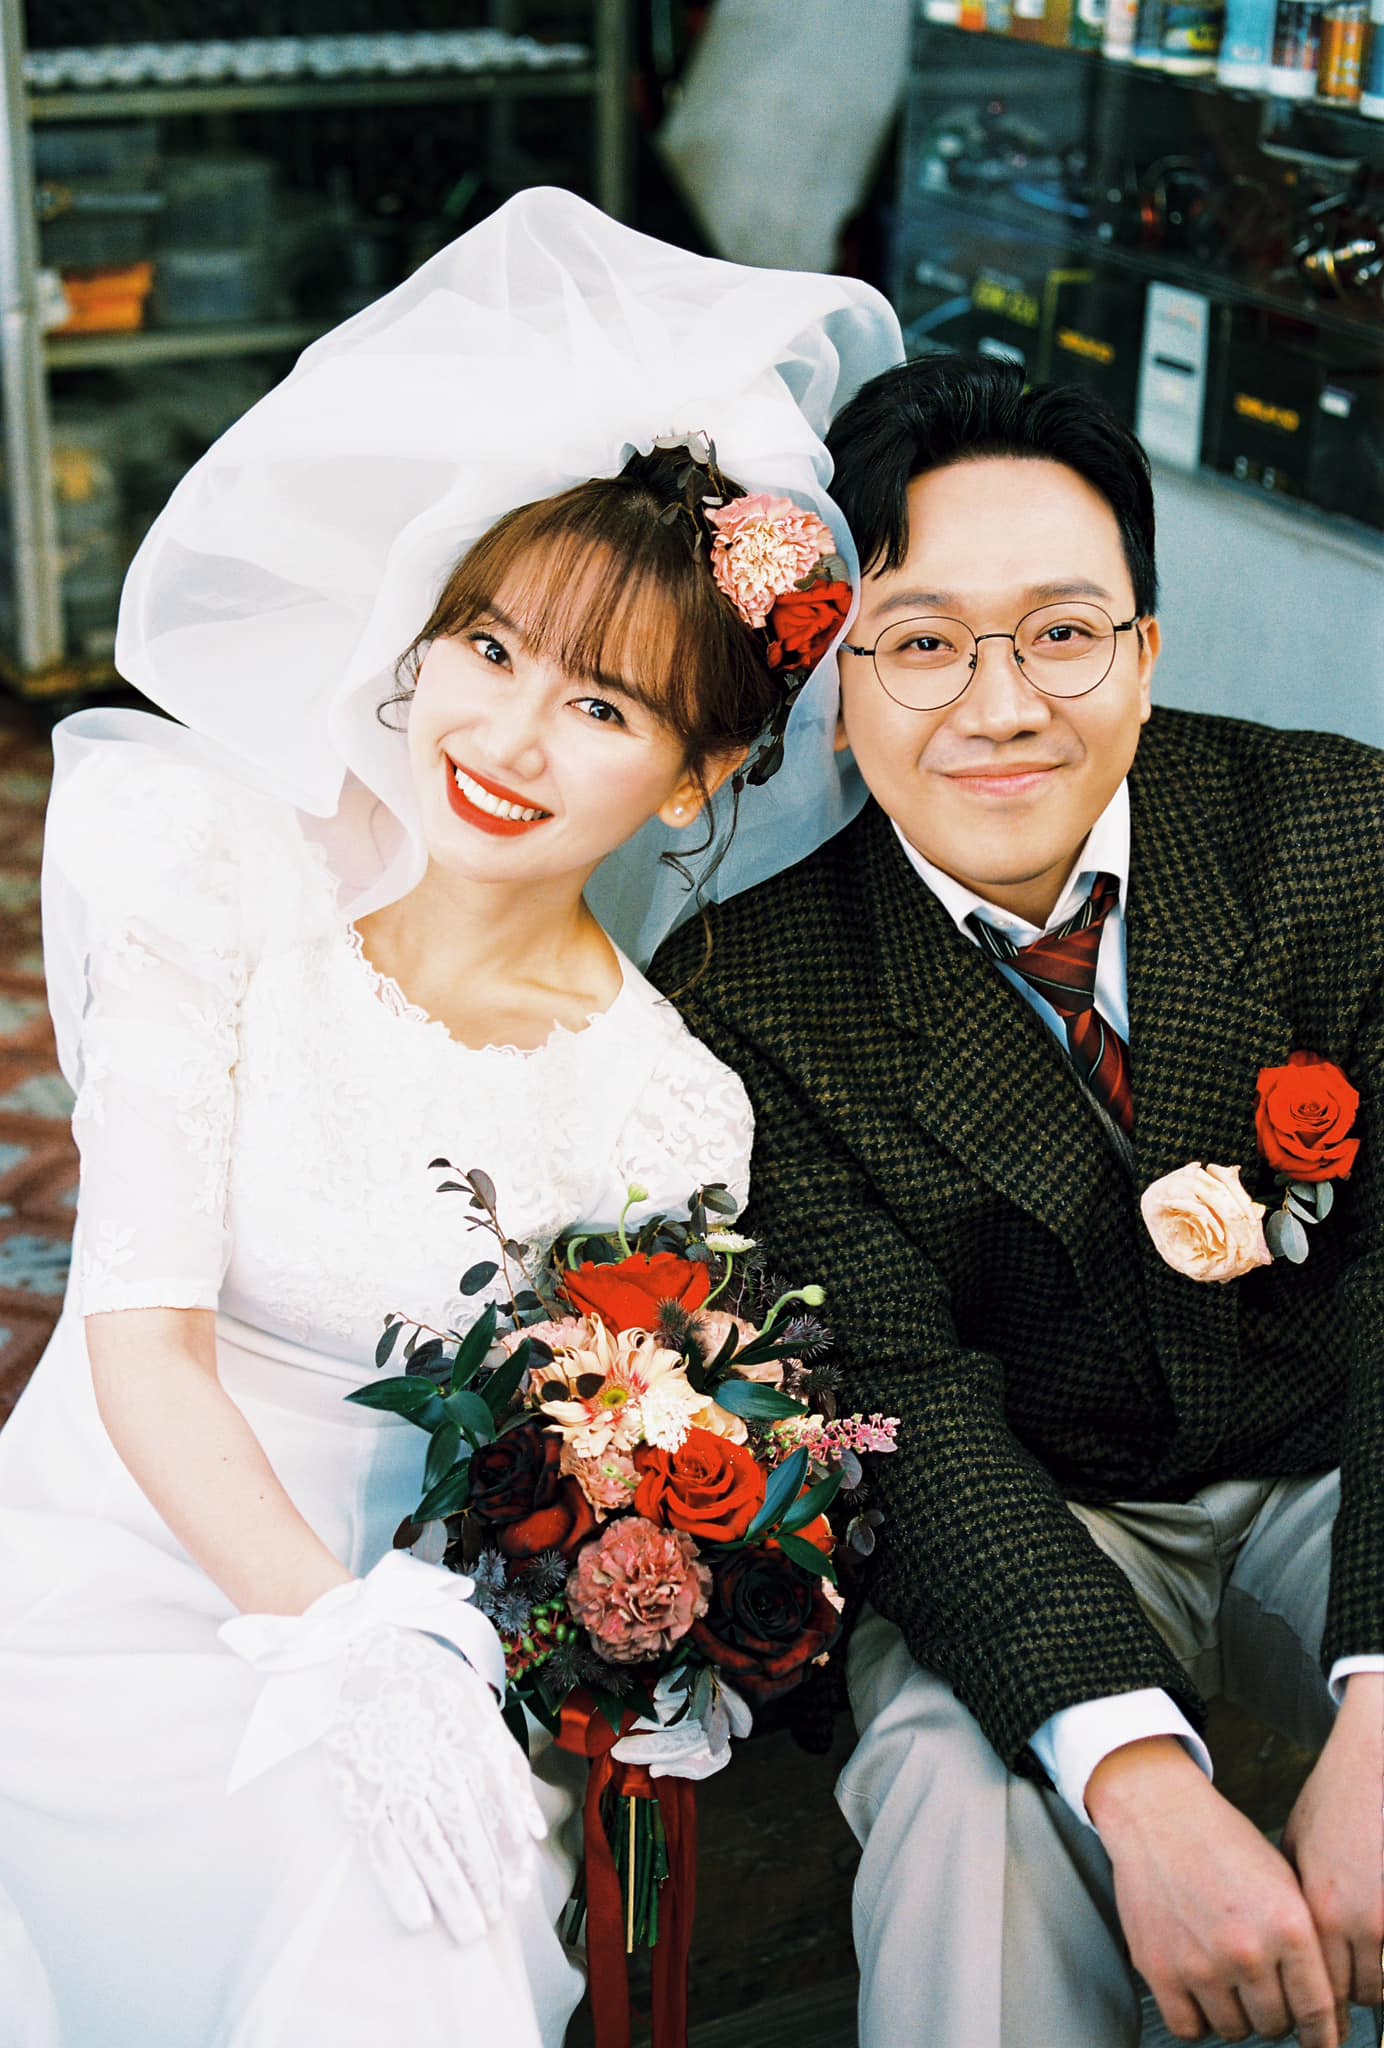 Soi loạt địa điểm Đà Lạt trong bộ ảnh cưới của Trấn Thành - Hari Won: Toàn nơi quen thuộc mà lên ảnh quá 